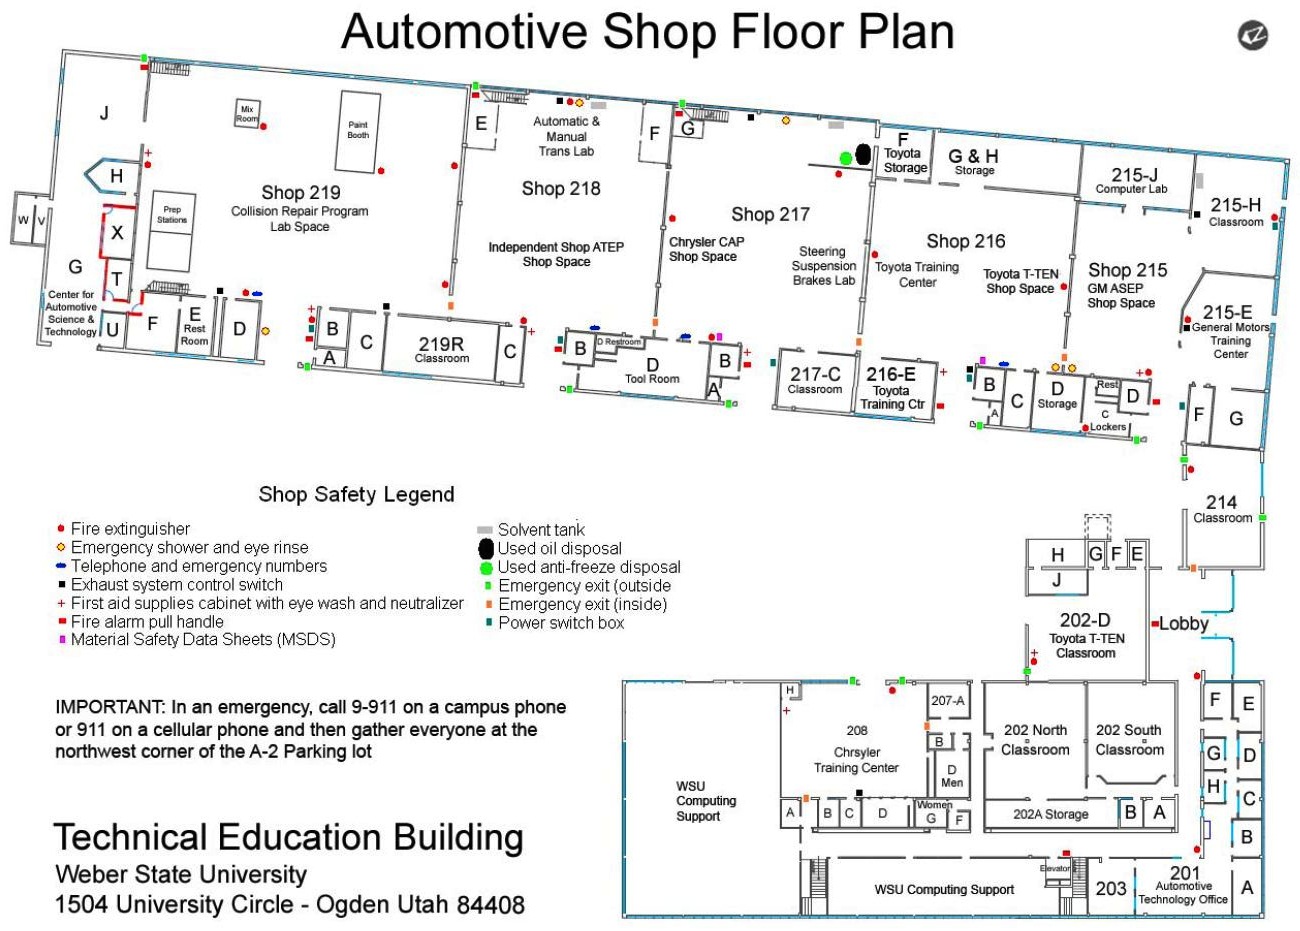 a detail floor plan of the automotive shop